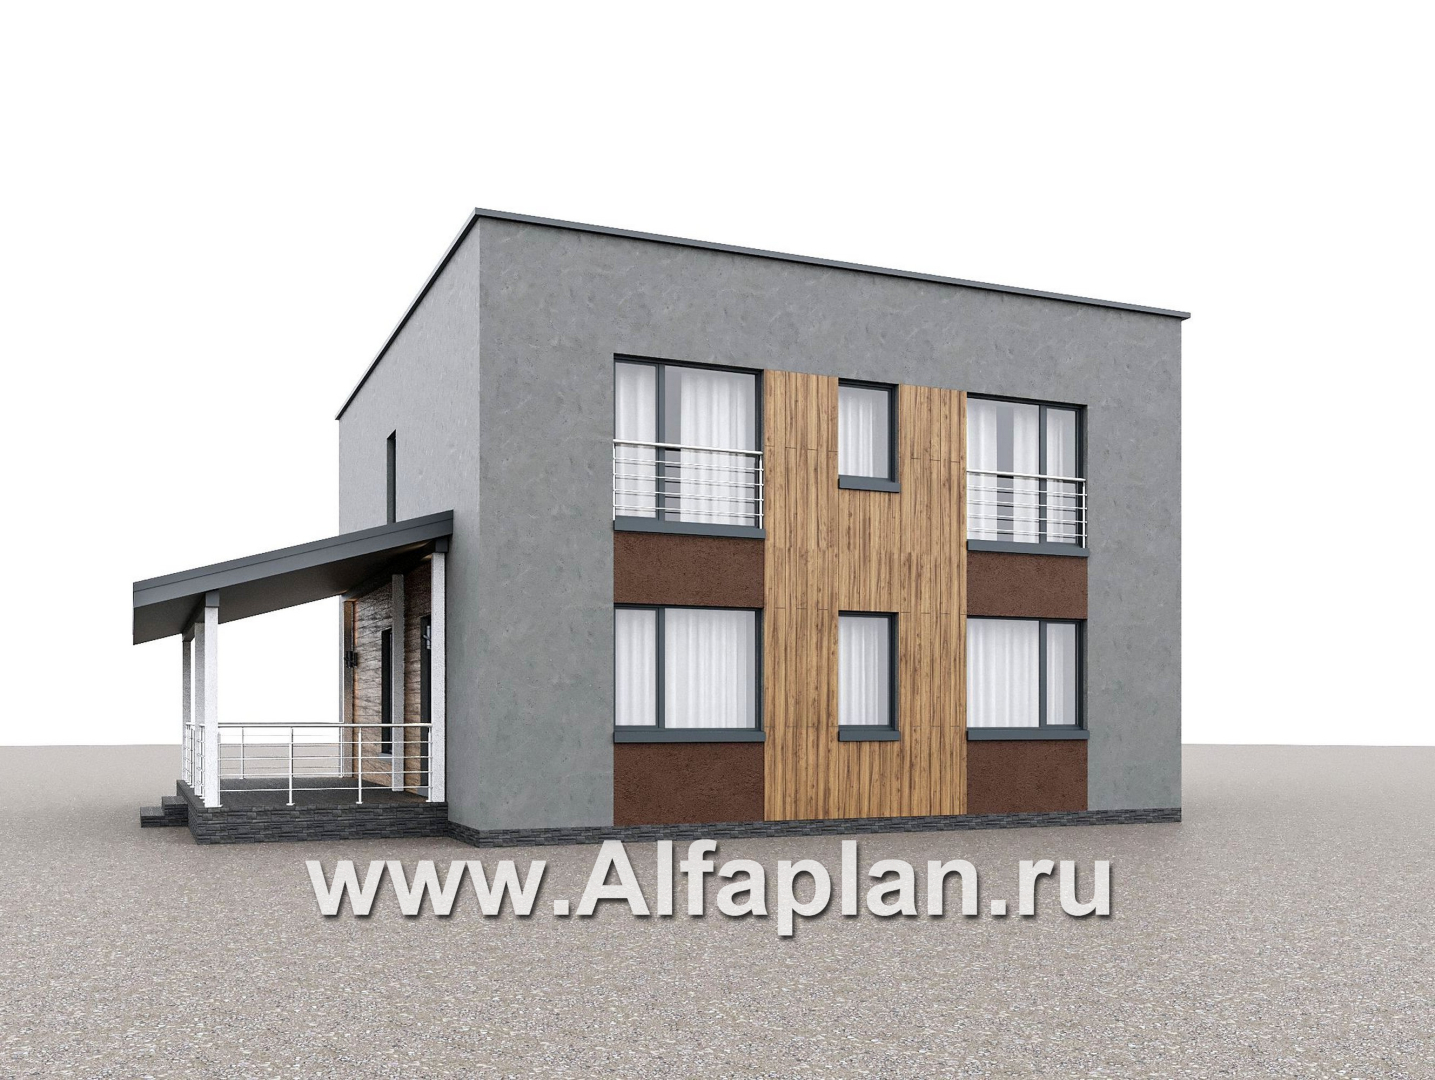 Проекты домов Альфаплан - "Коронадо" - проект дома, 2 этажа, со вторым светом гостиной, с террасой и плоской крышей, в стиле хай-тек  - дополнительное изображение №1